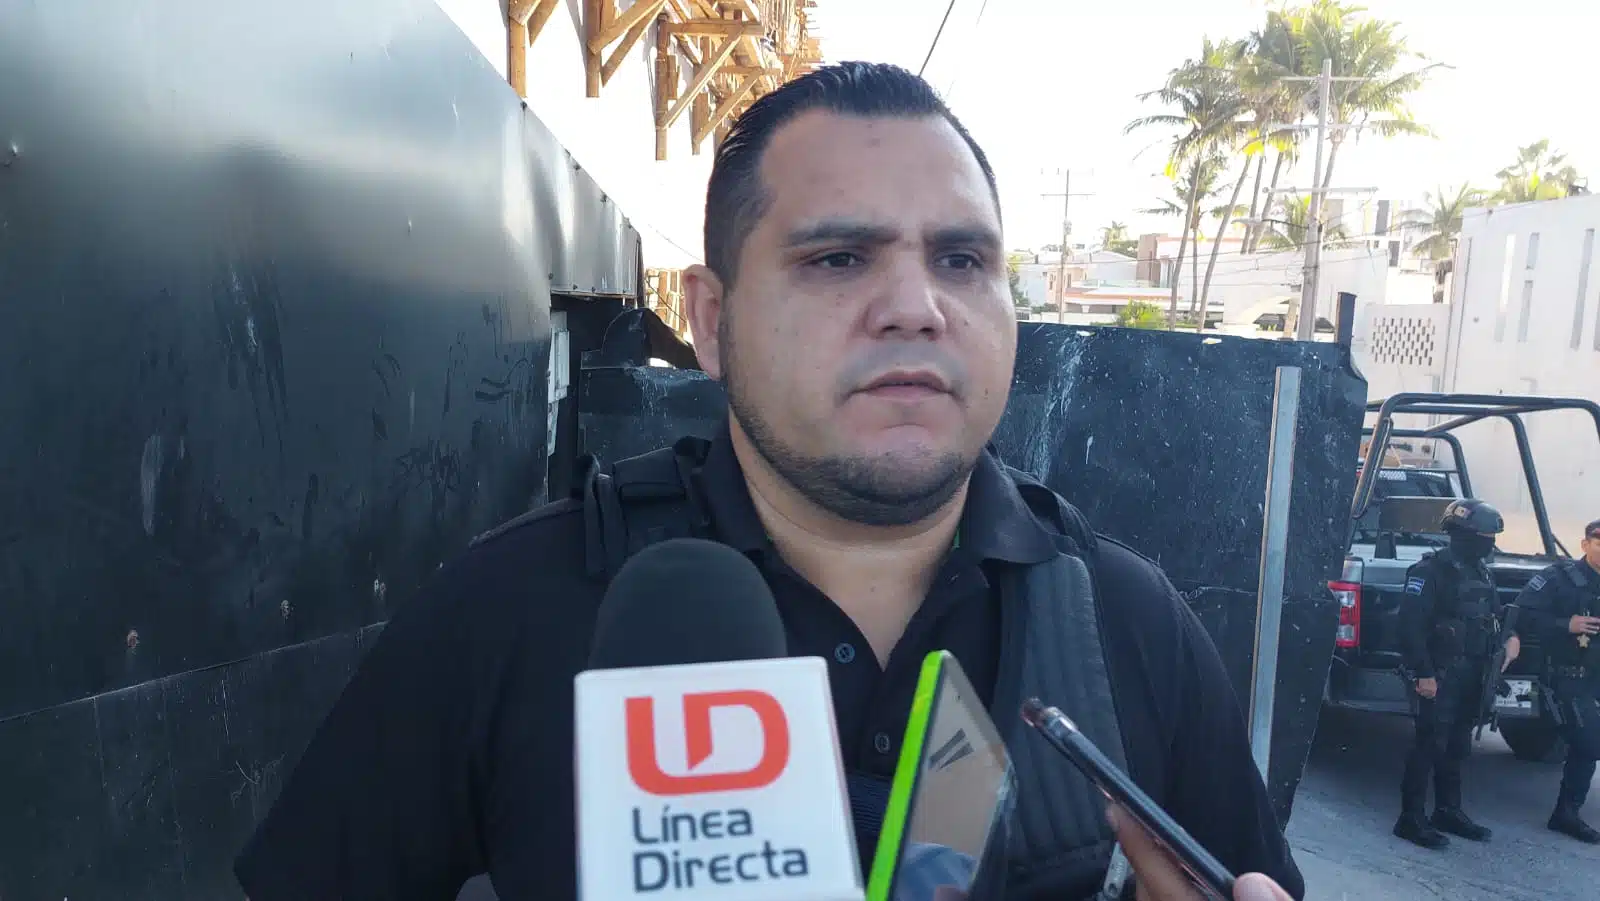 Reportan presencia de grupo armado en sindicatura de El Recodo; Sedena y GN acuden en operativo